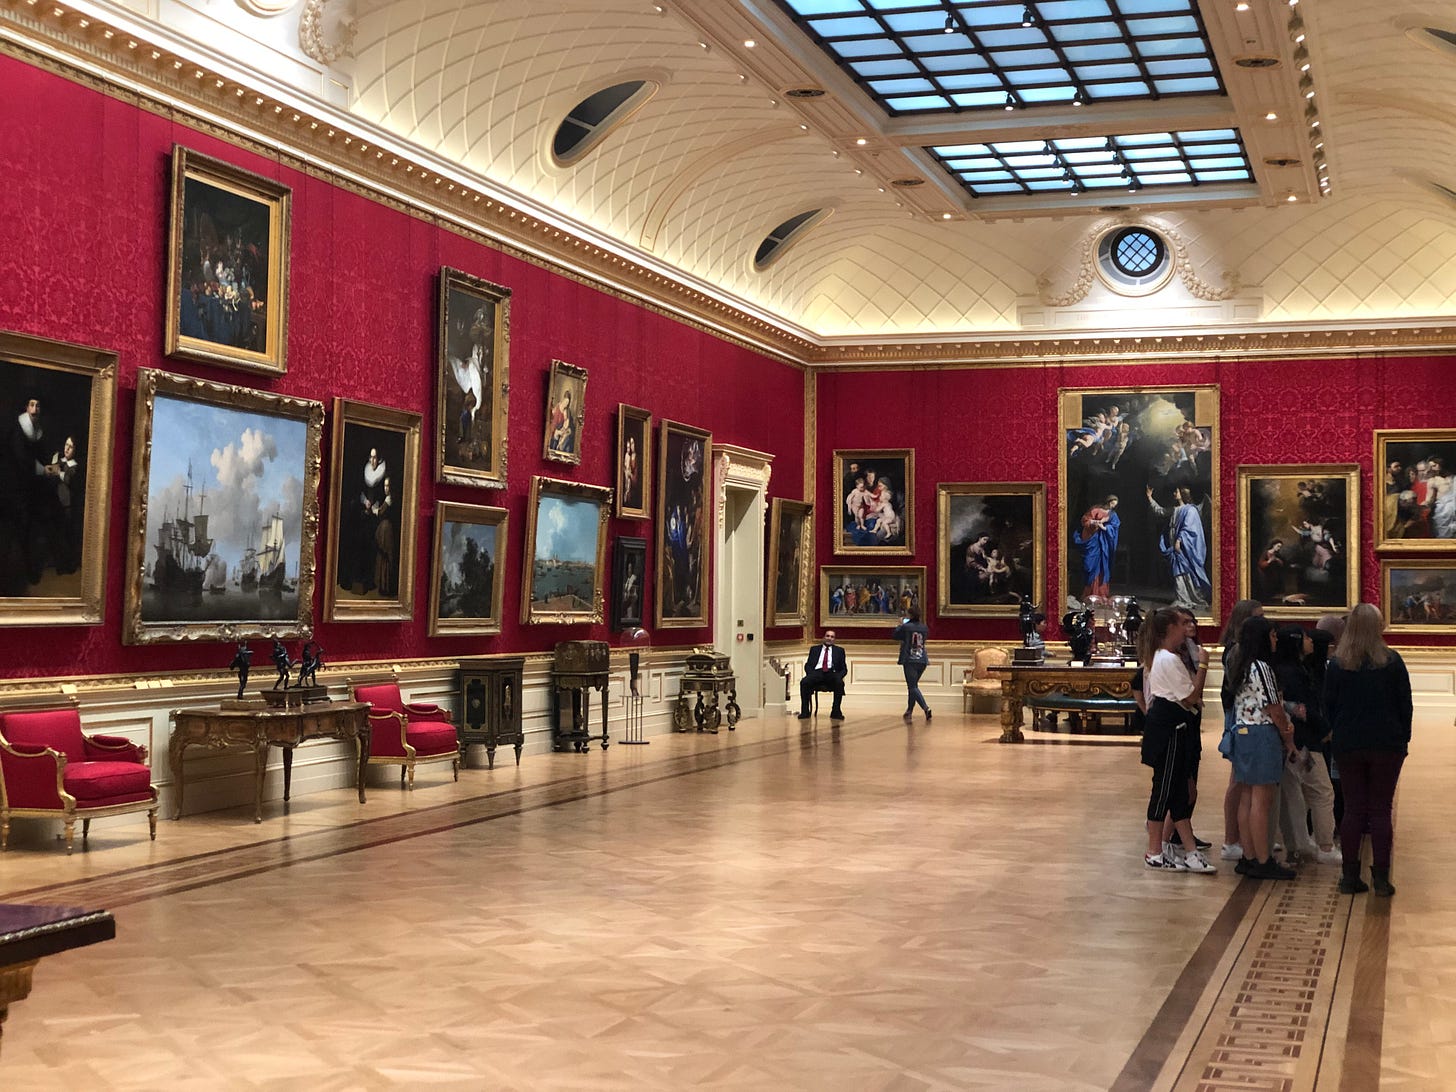 A fancy museum in London